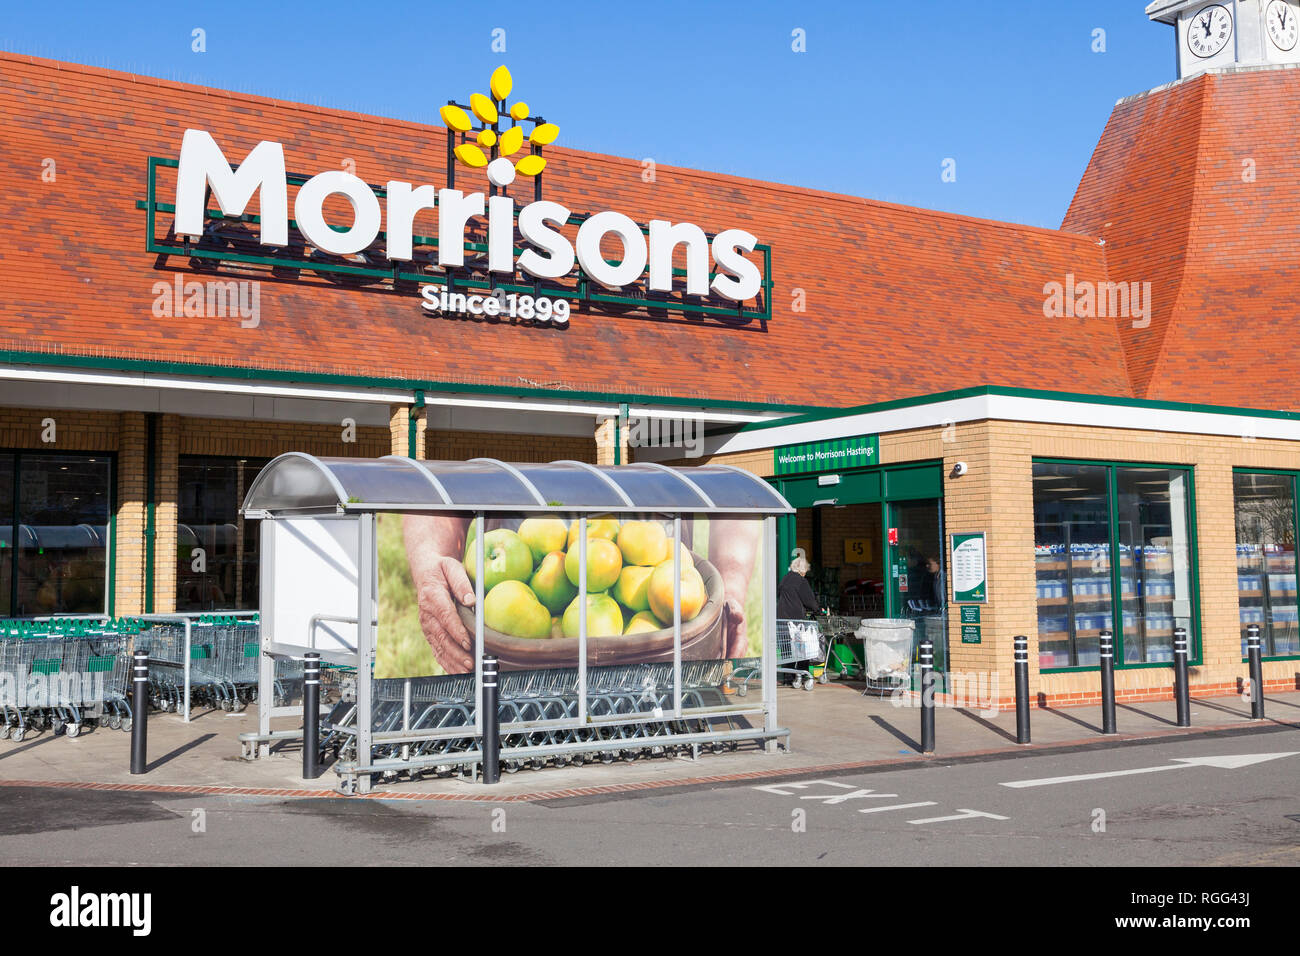 Tienda de supermercado Morrisons frente, hastings, este sussex, reino unido Foto de stock